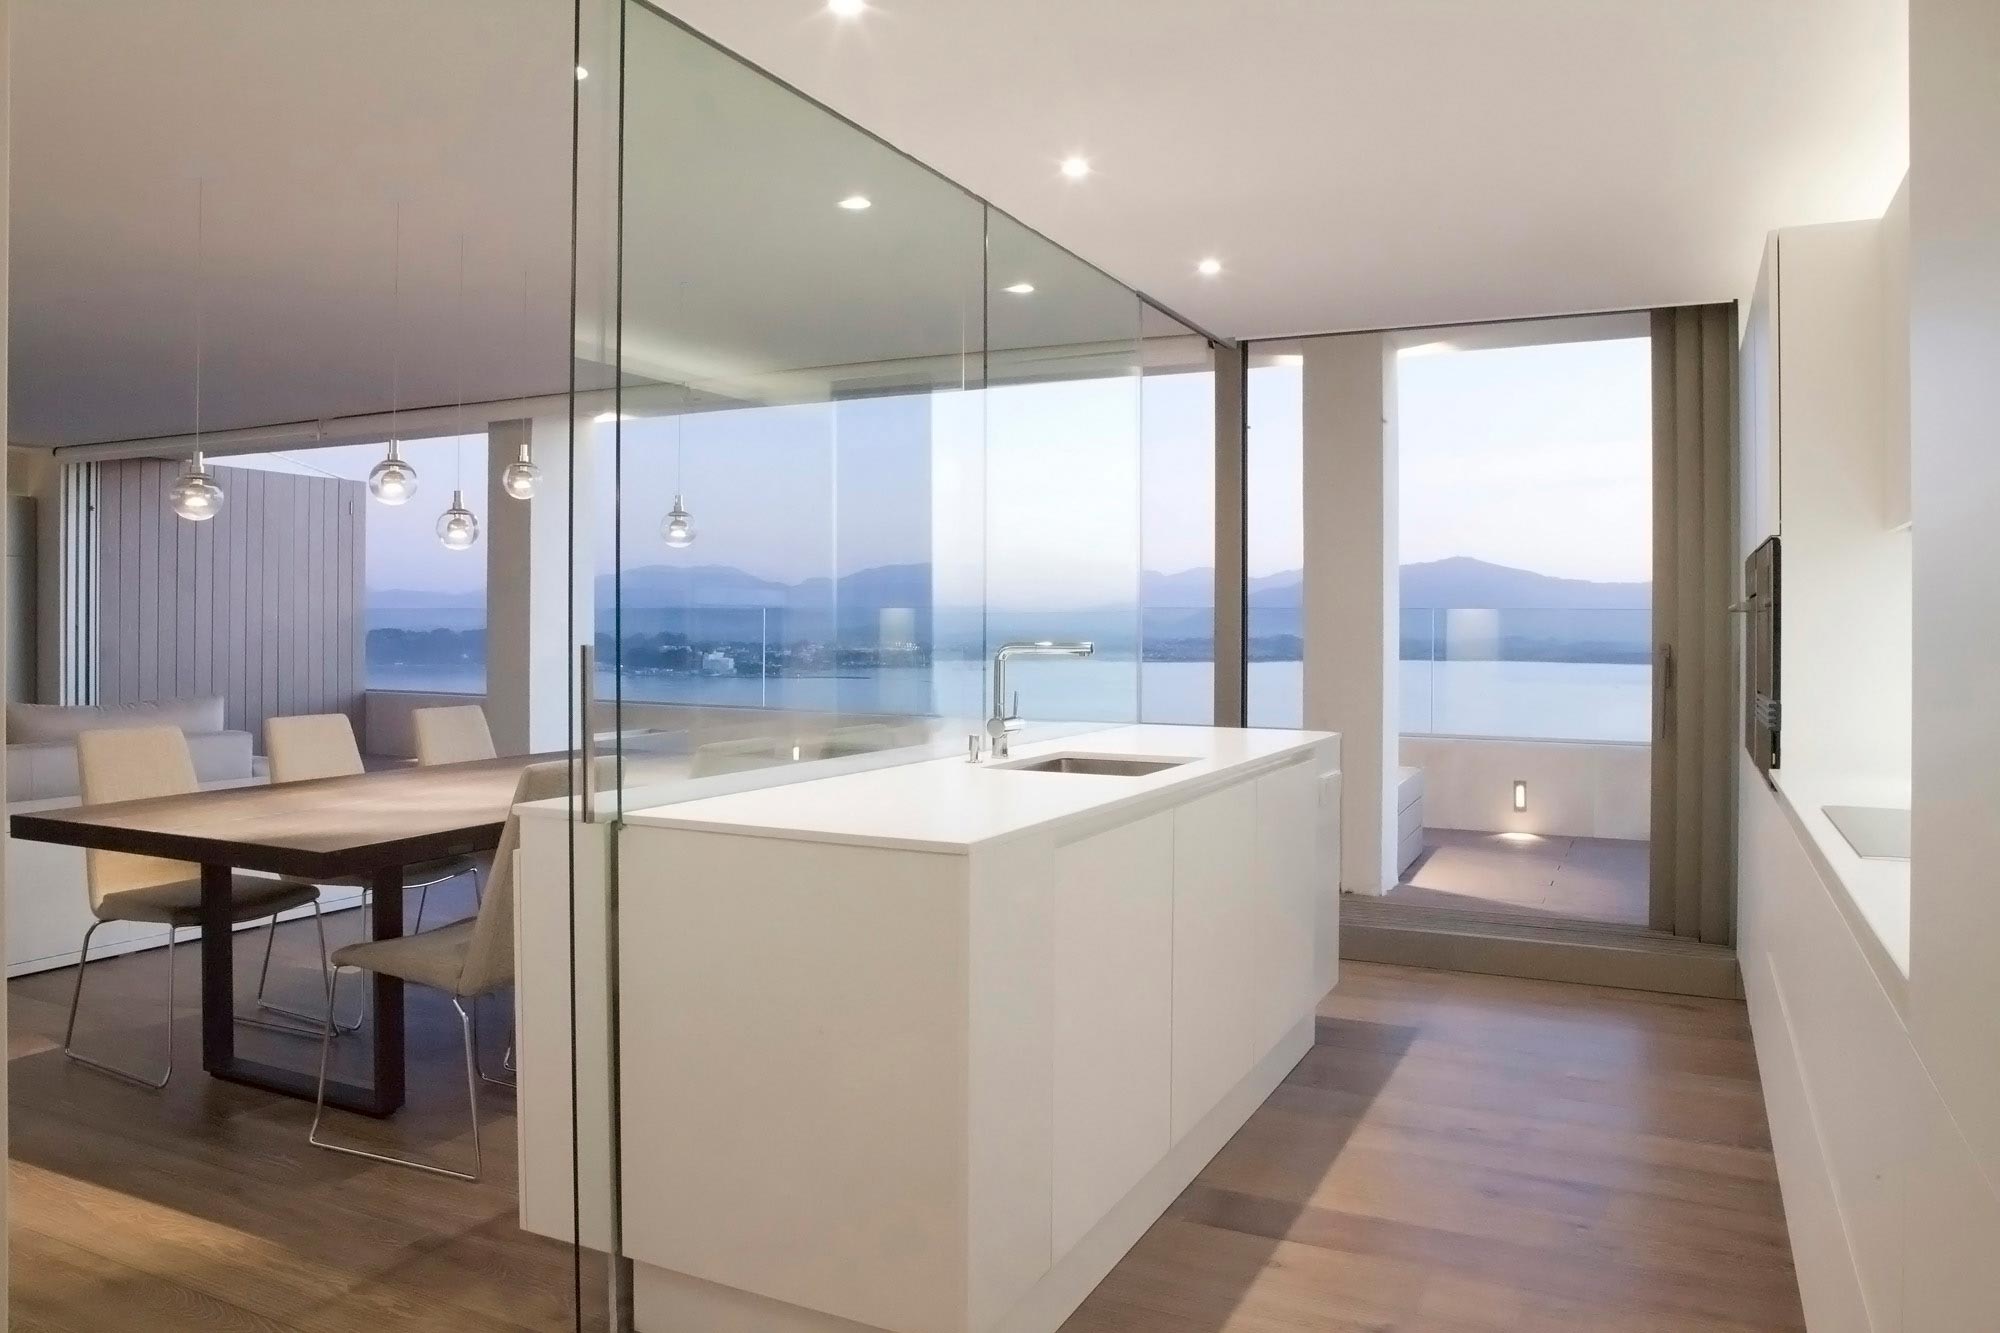 Cocina de diseño minimalista en reforma integral de vivienda diseñada por Moah Arquitectos en Santander